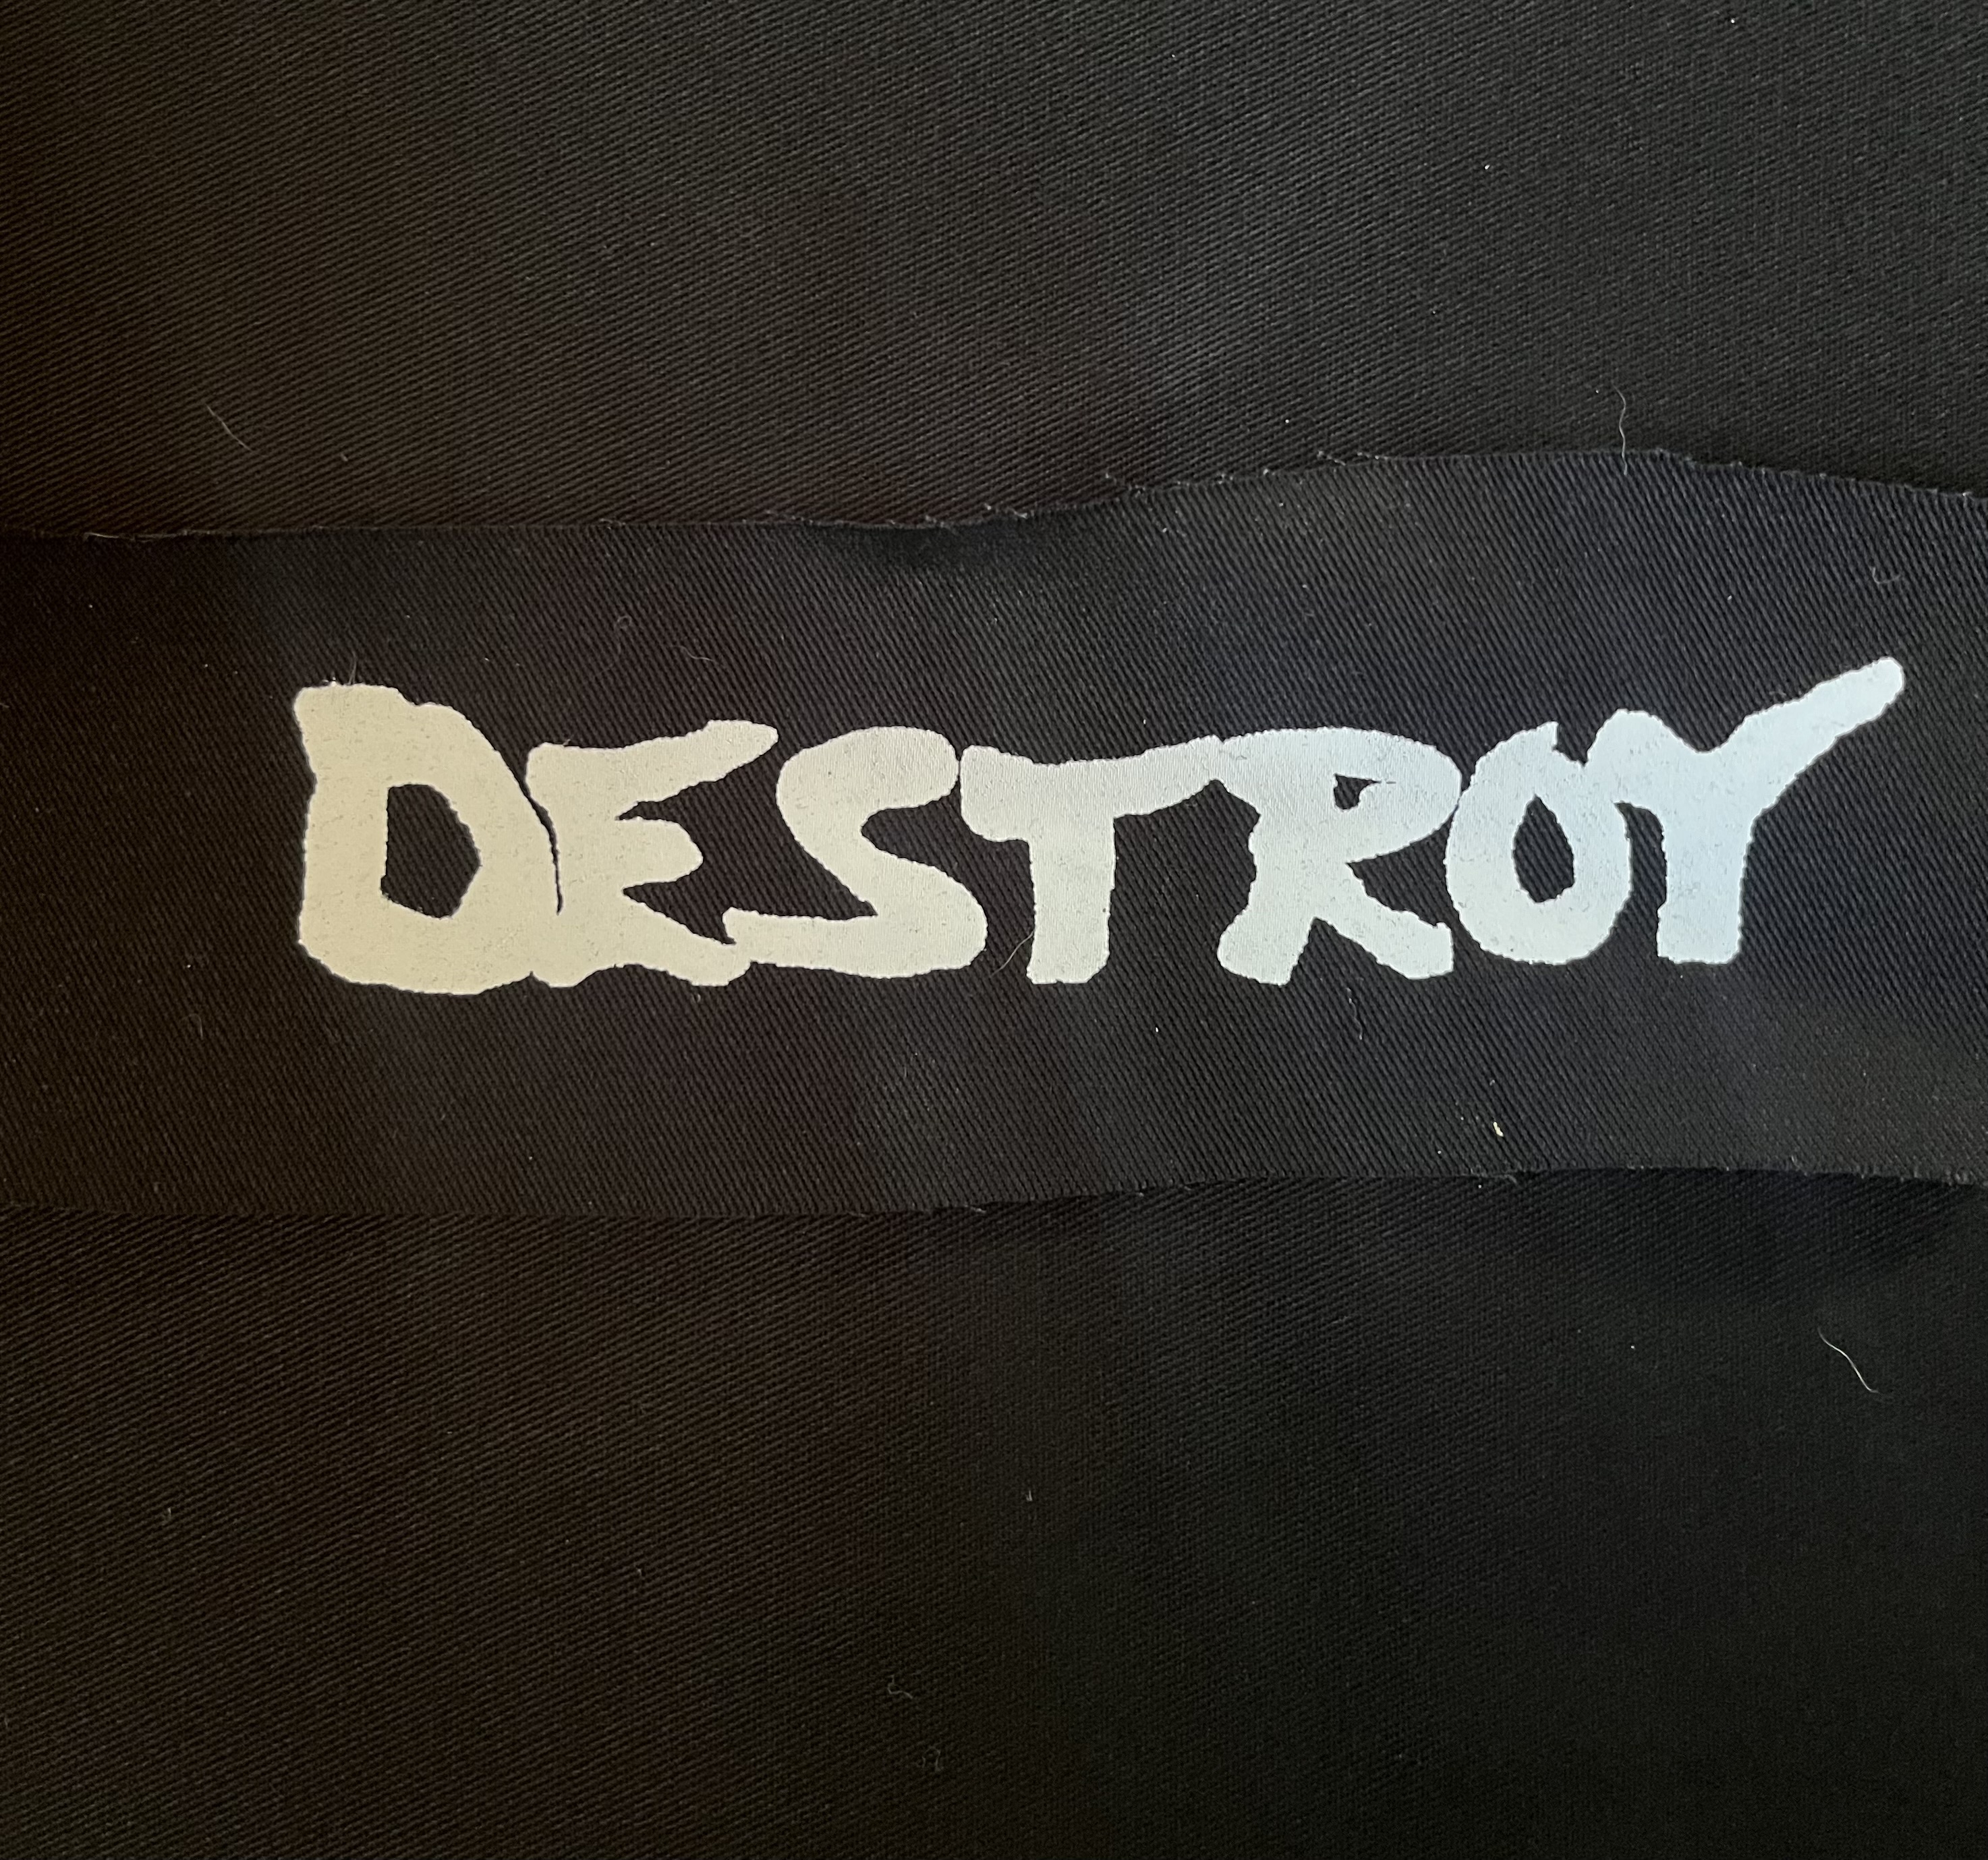 DESTROY - Name - Patch